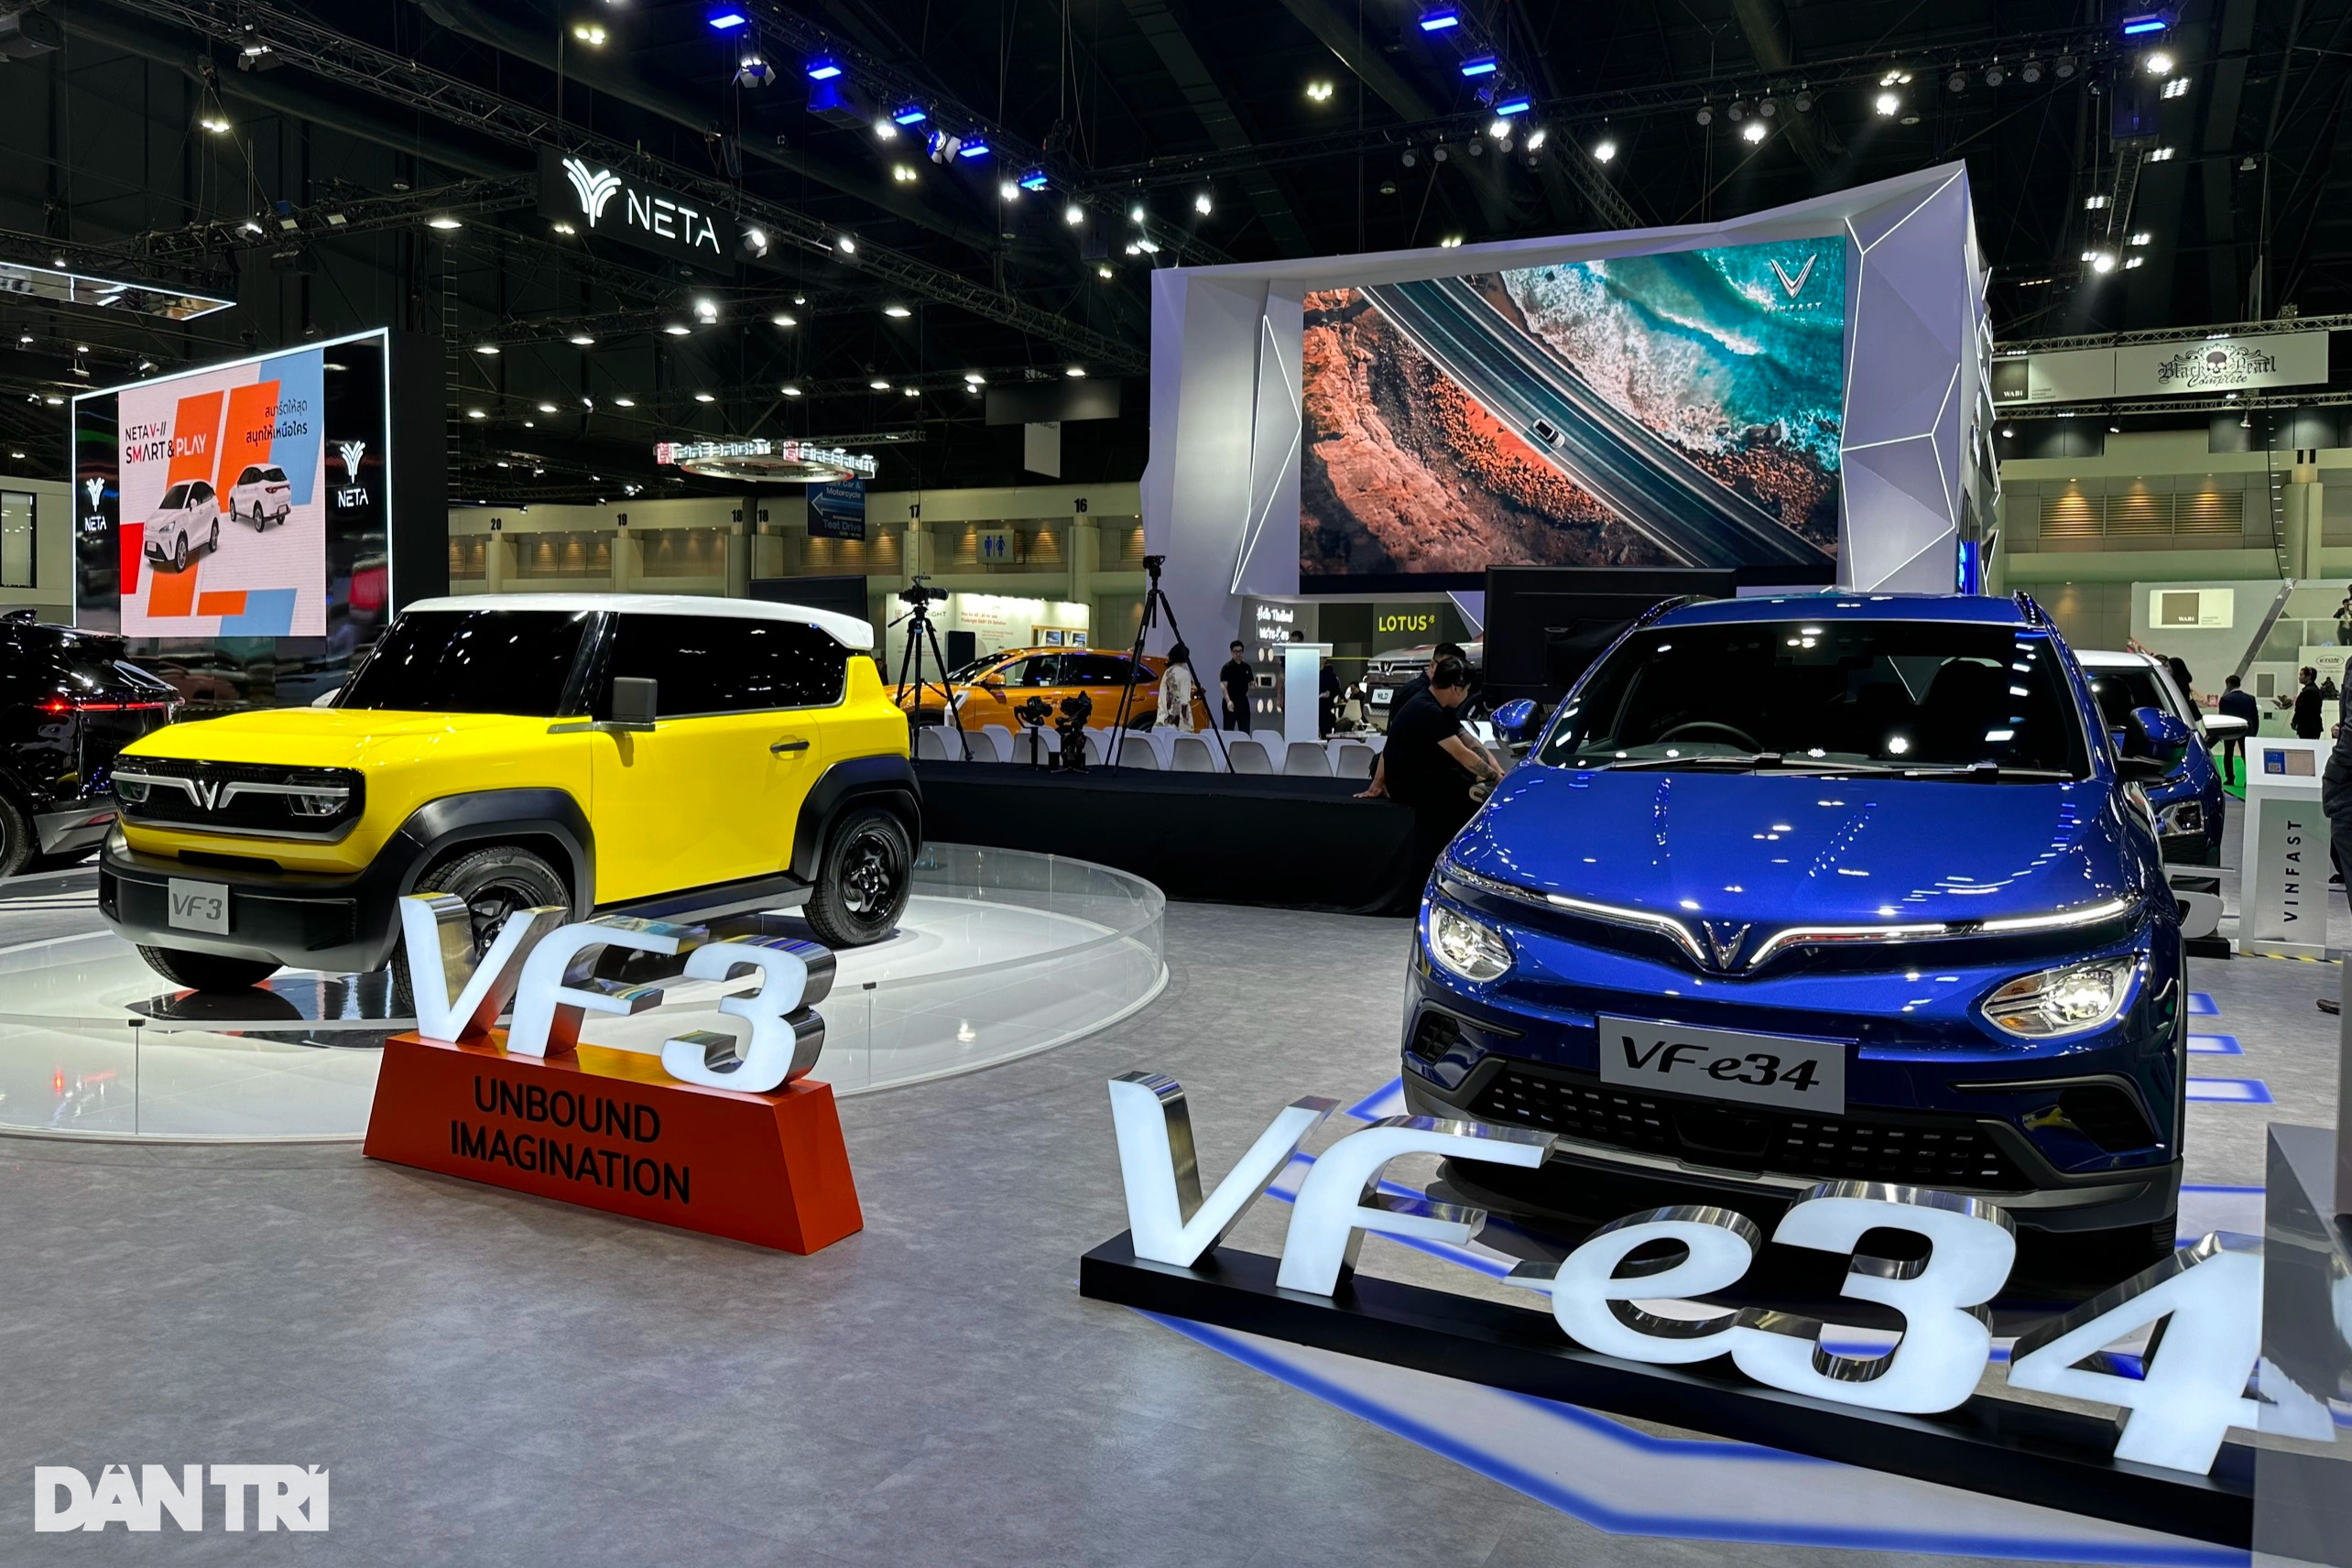 View - VinFast "đổ bộ" Thái Lan với loạt ô tô tay lái nghịch, VF Wild là điểm nhấn | Báo Dân trí